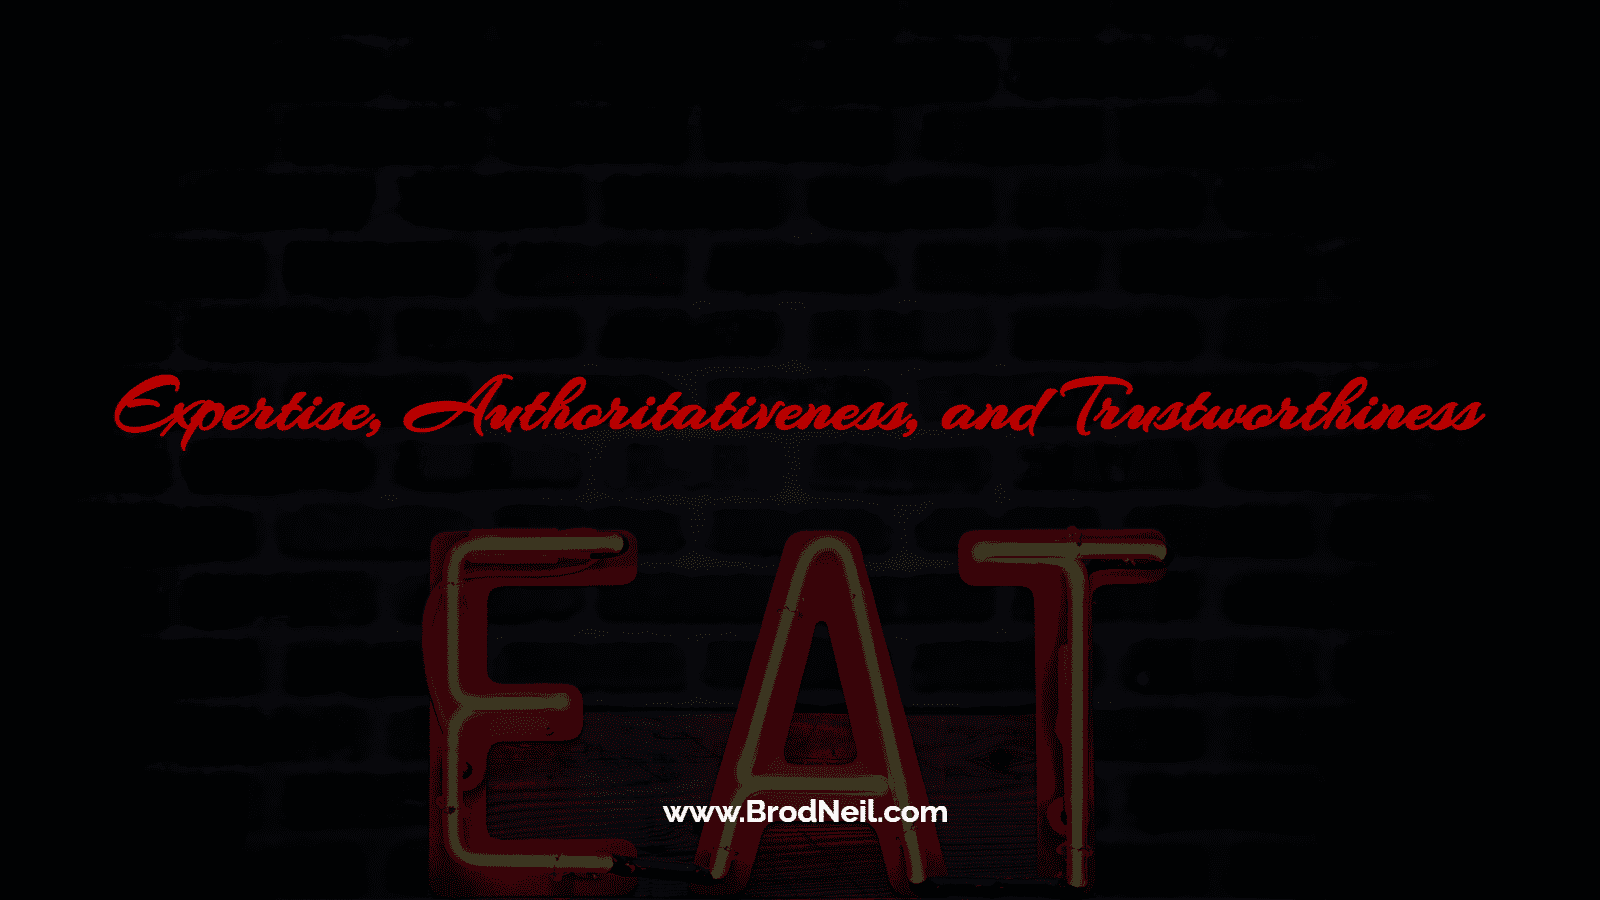 EAT: Expertise, Authoritativeness, and Trustworthiness